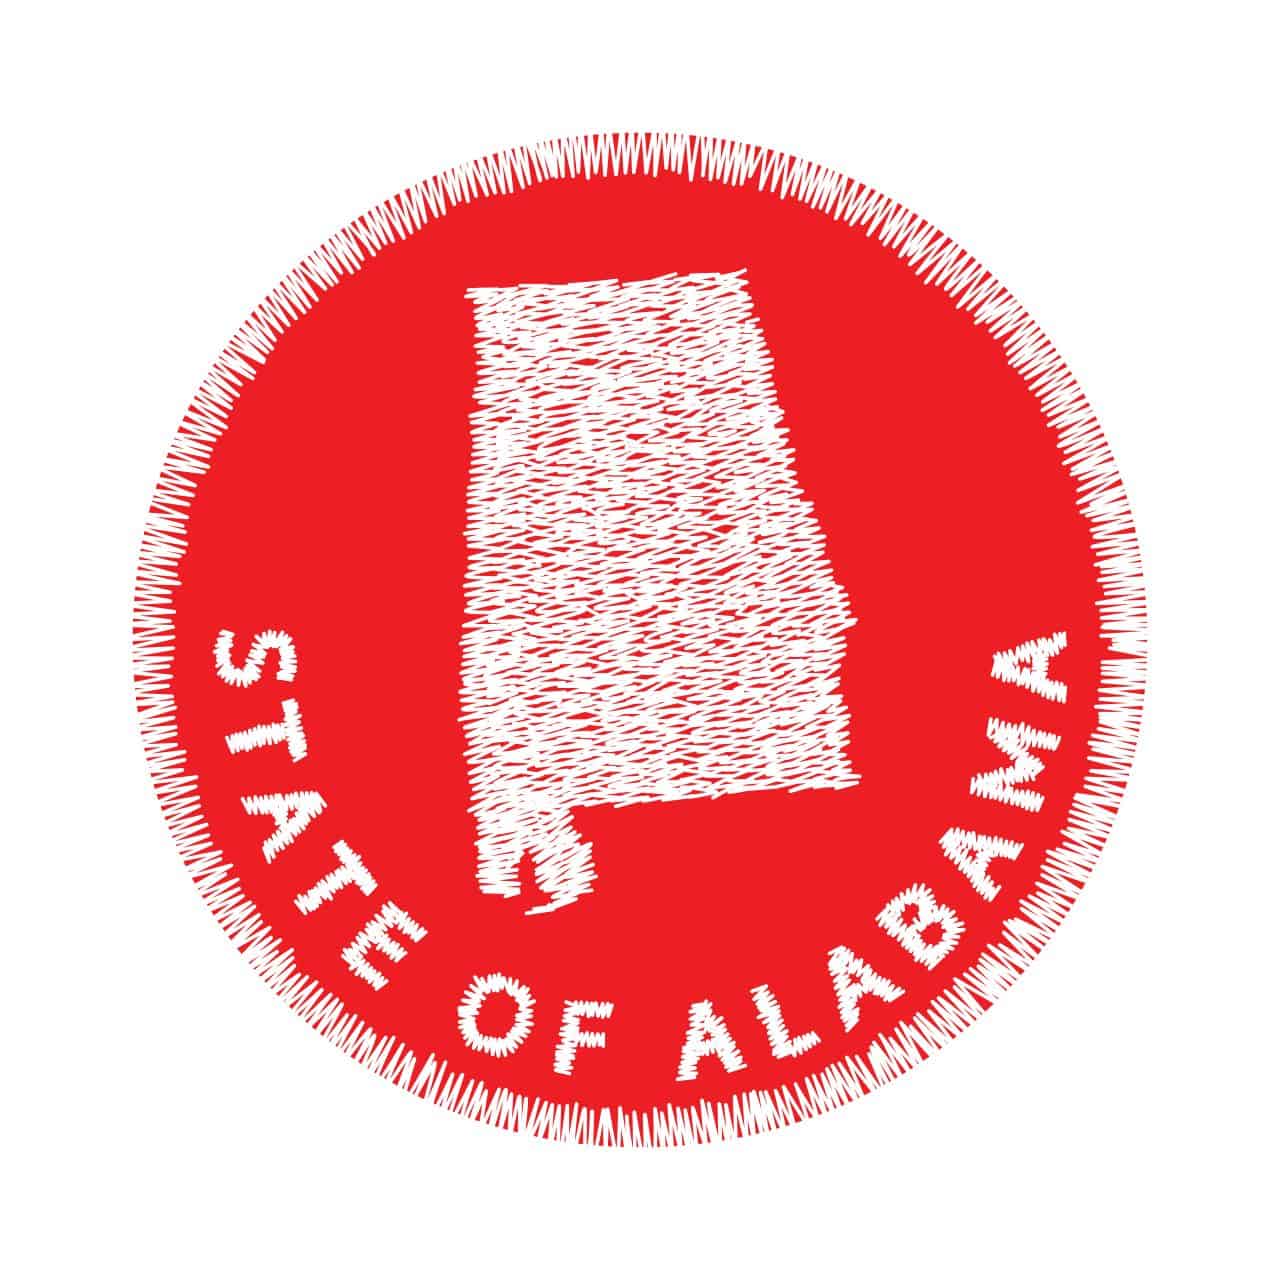 North Carolina to Alabama